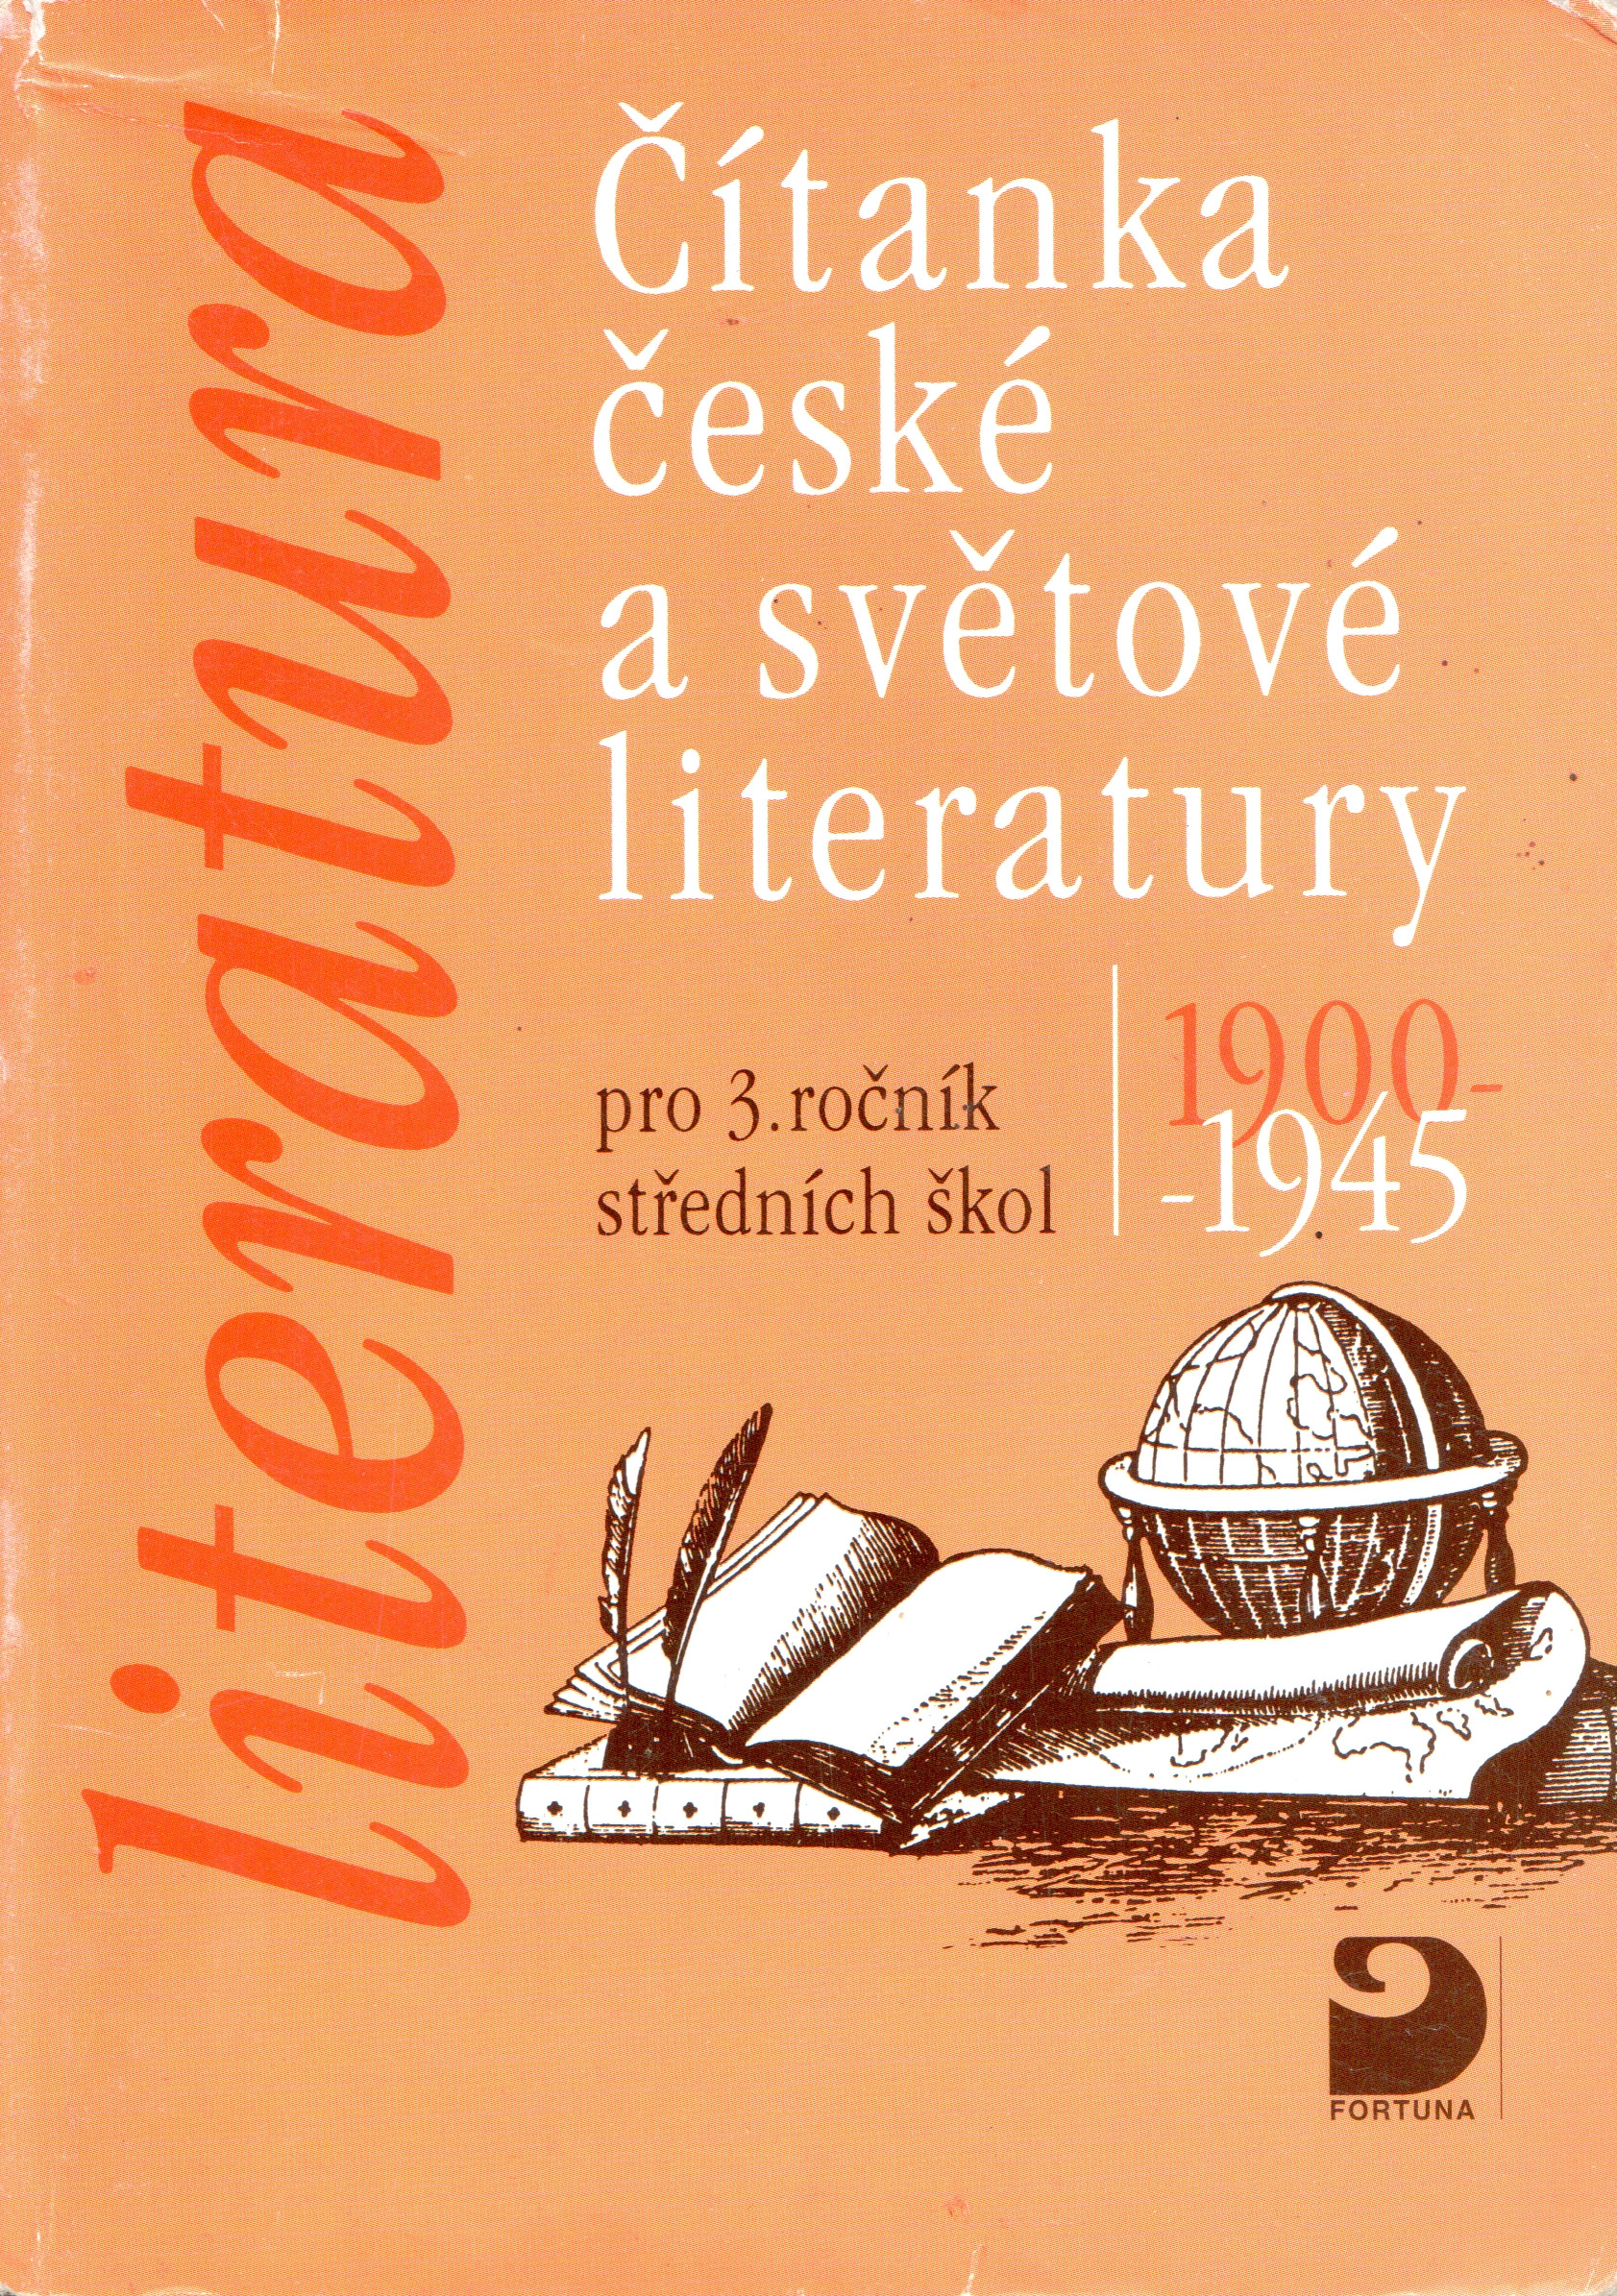 Čítanka české a světové literatury: 1900-1945 pro 3. ročník středních škol - Náhled učebnice